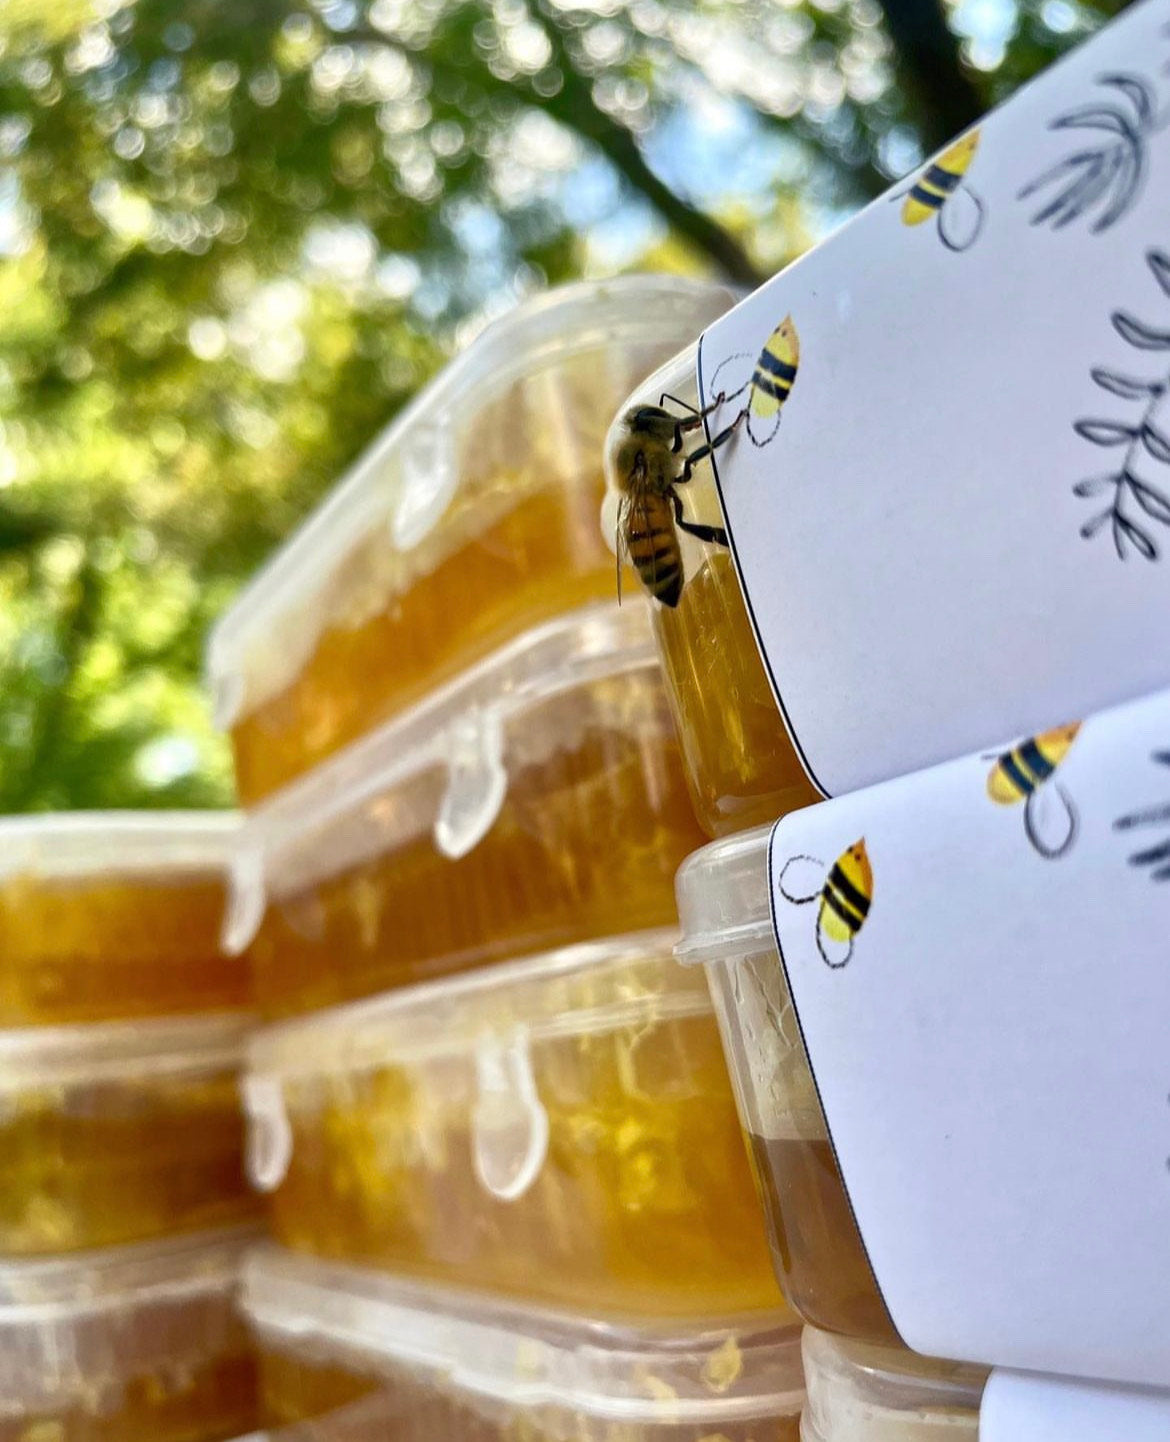 Leeuwkuil Premium Organic Wildflower Honeycomb 300g